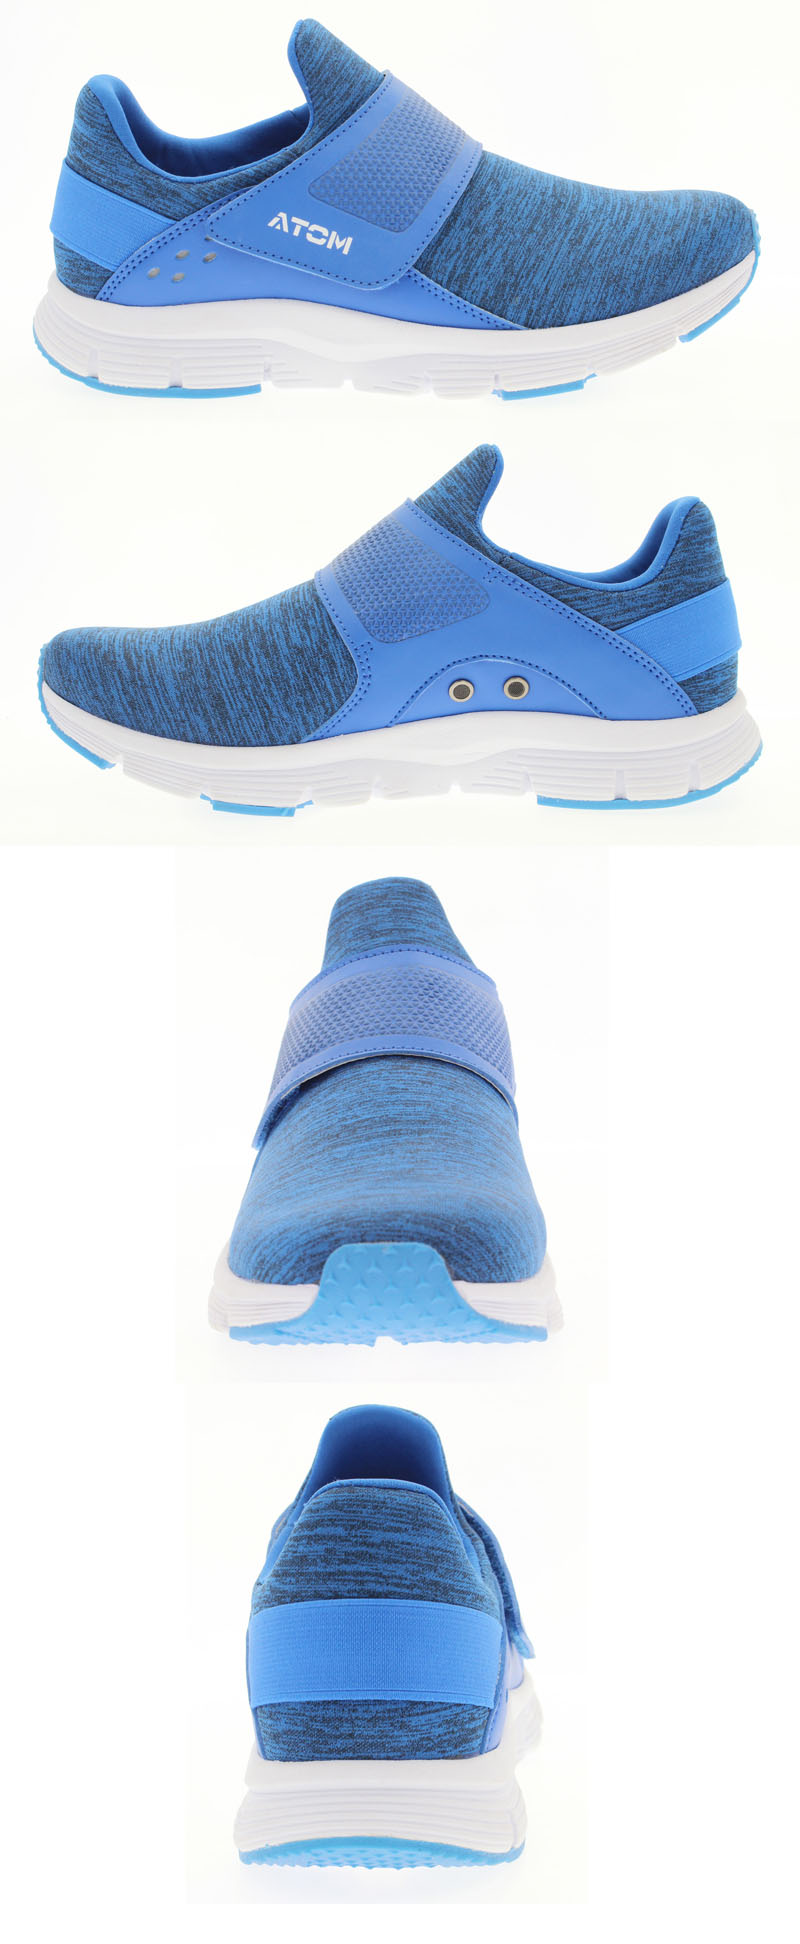 Royal blue mixture shoes